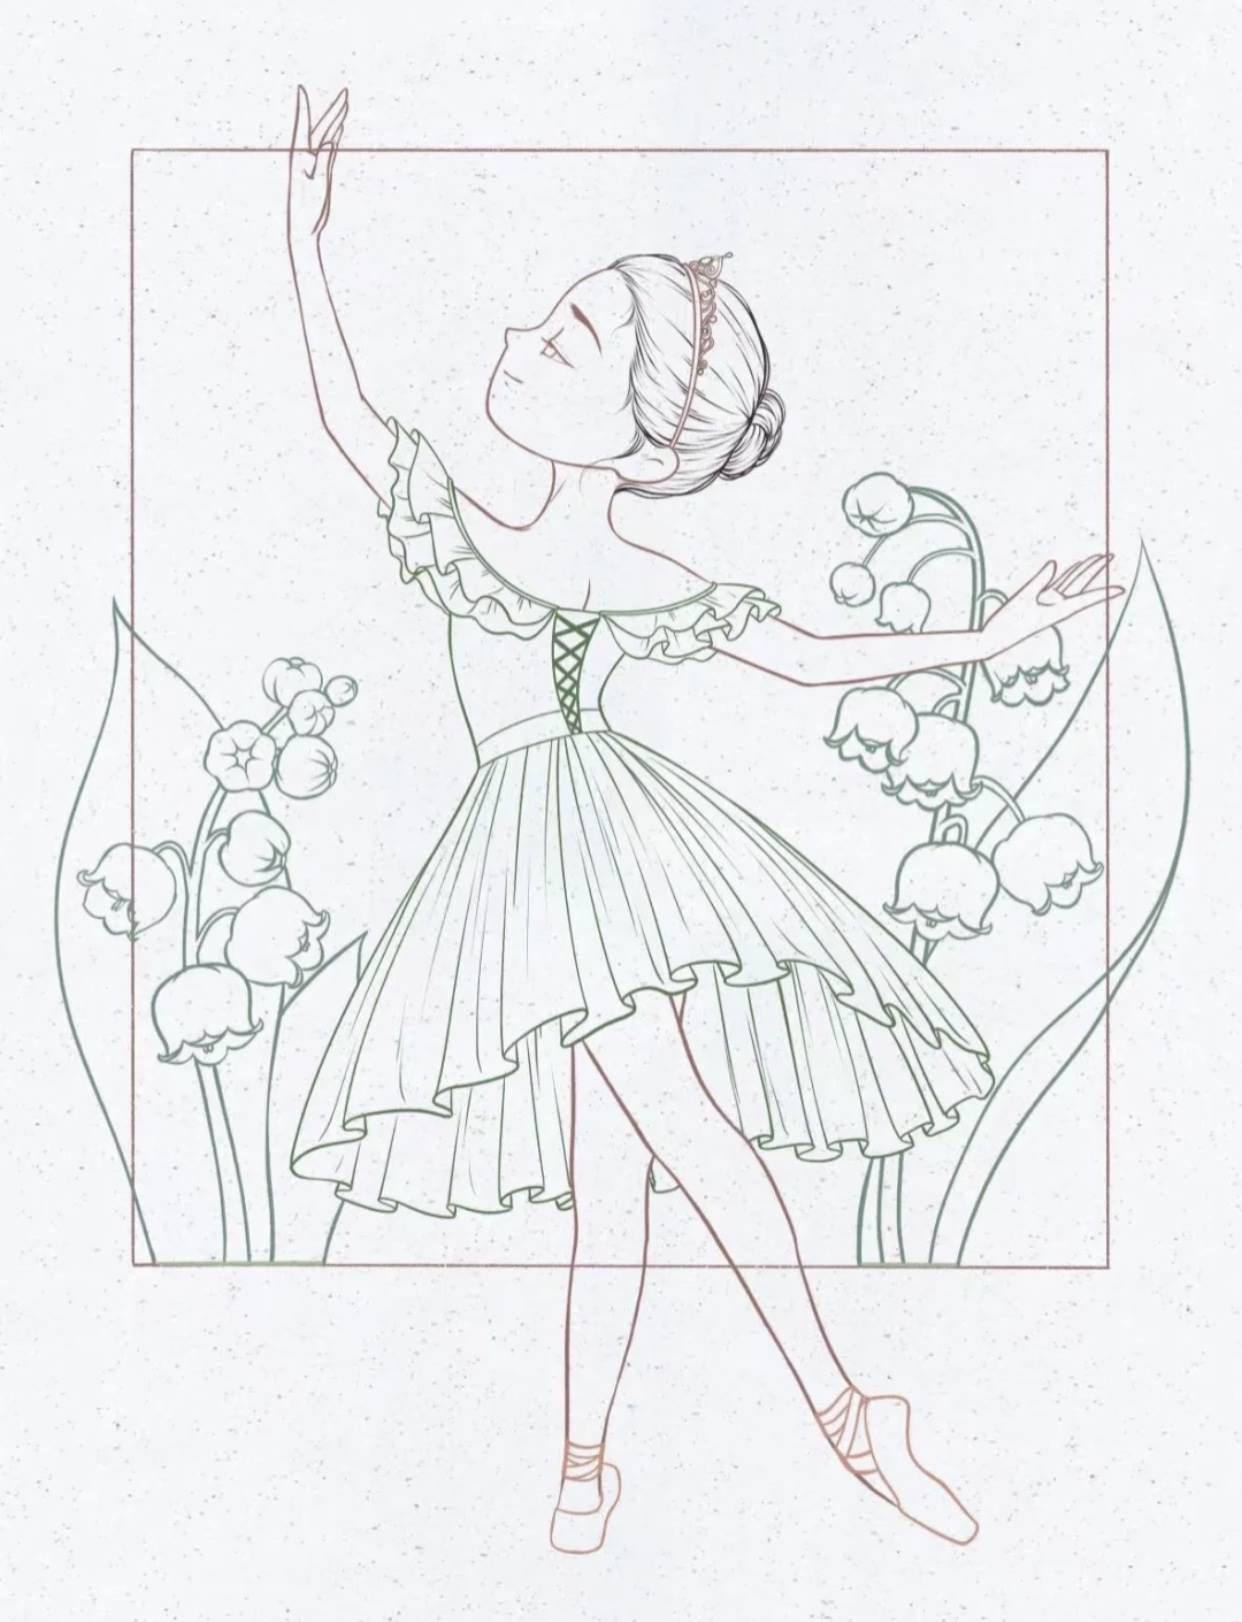 芭蕾舞演员插图绘画美女三七女生节37女生节图片下载 - 觅知网